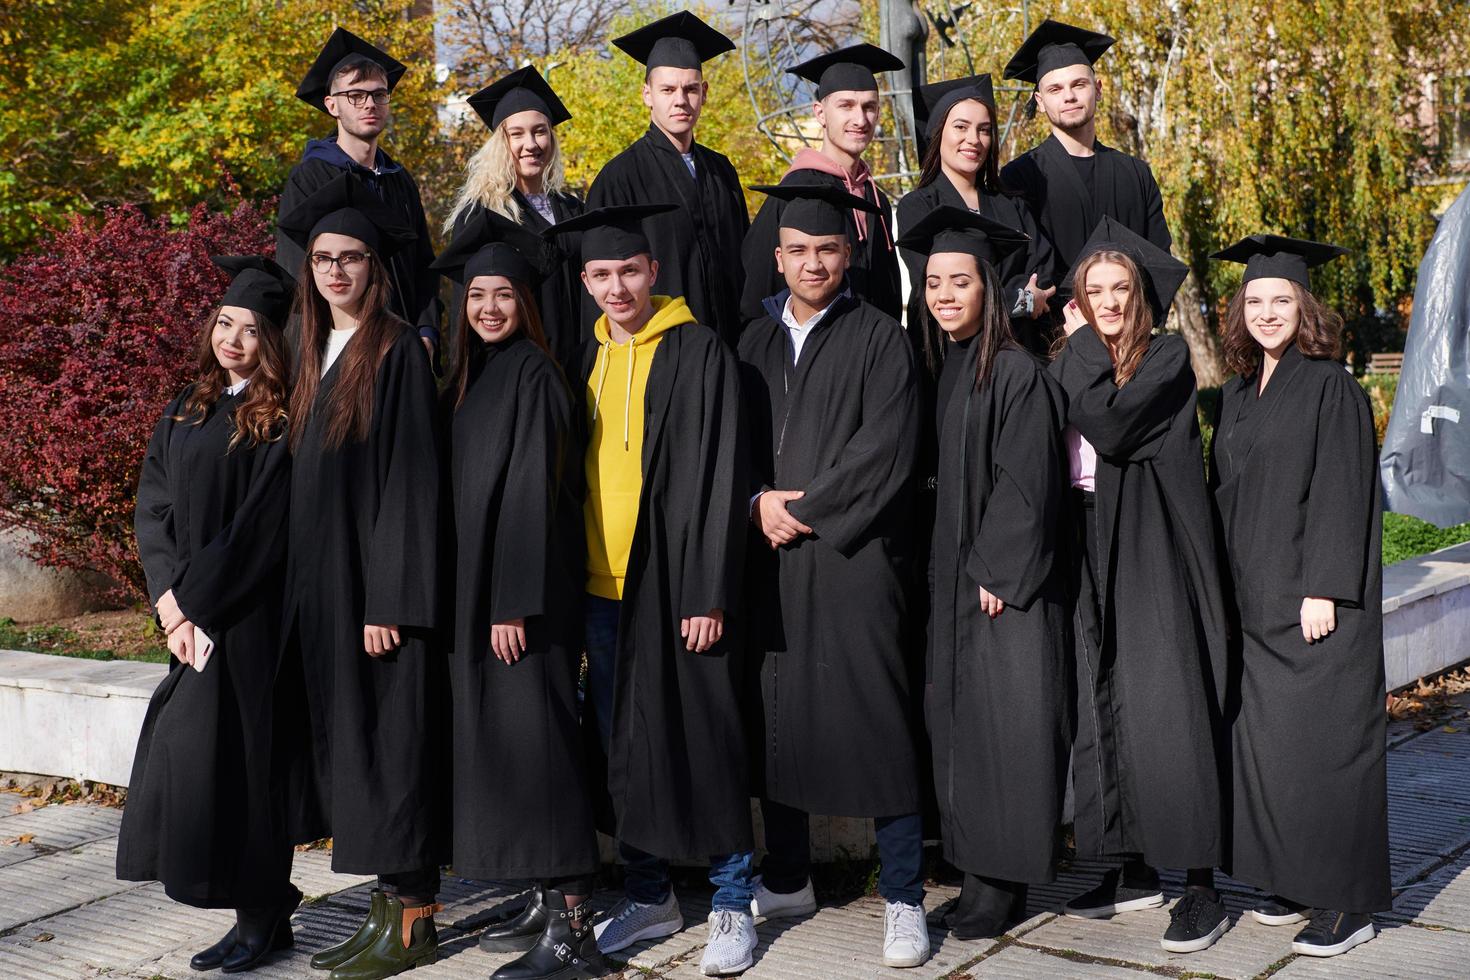 grupo de diversos estudantes de graduação internacionais comemorando foto